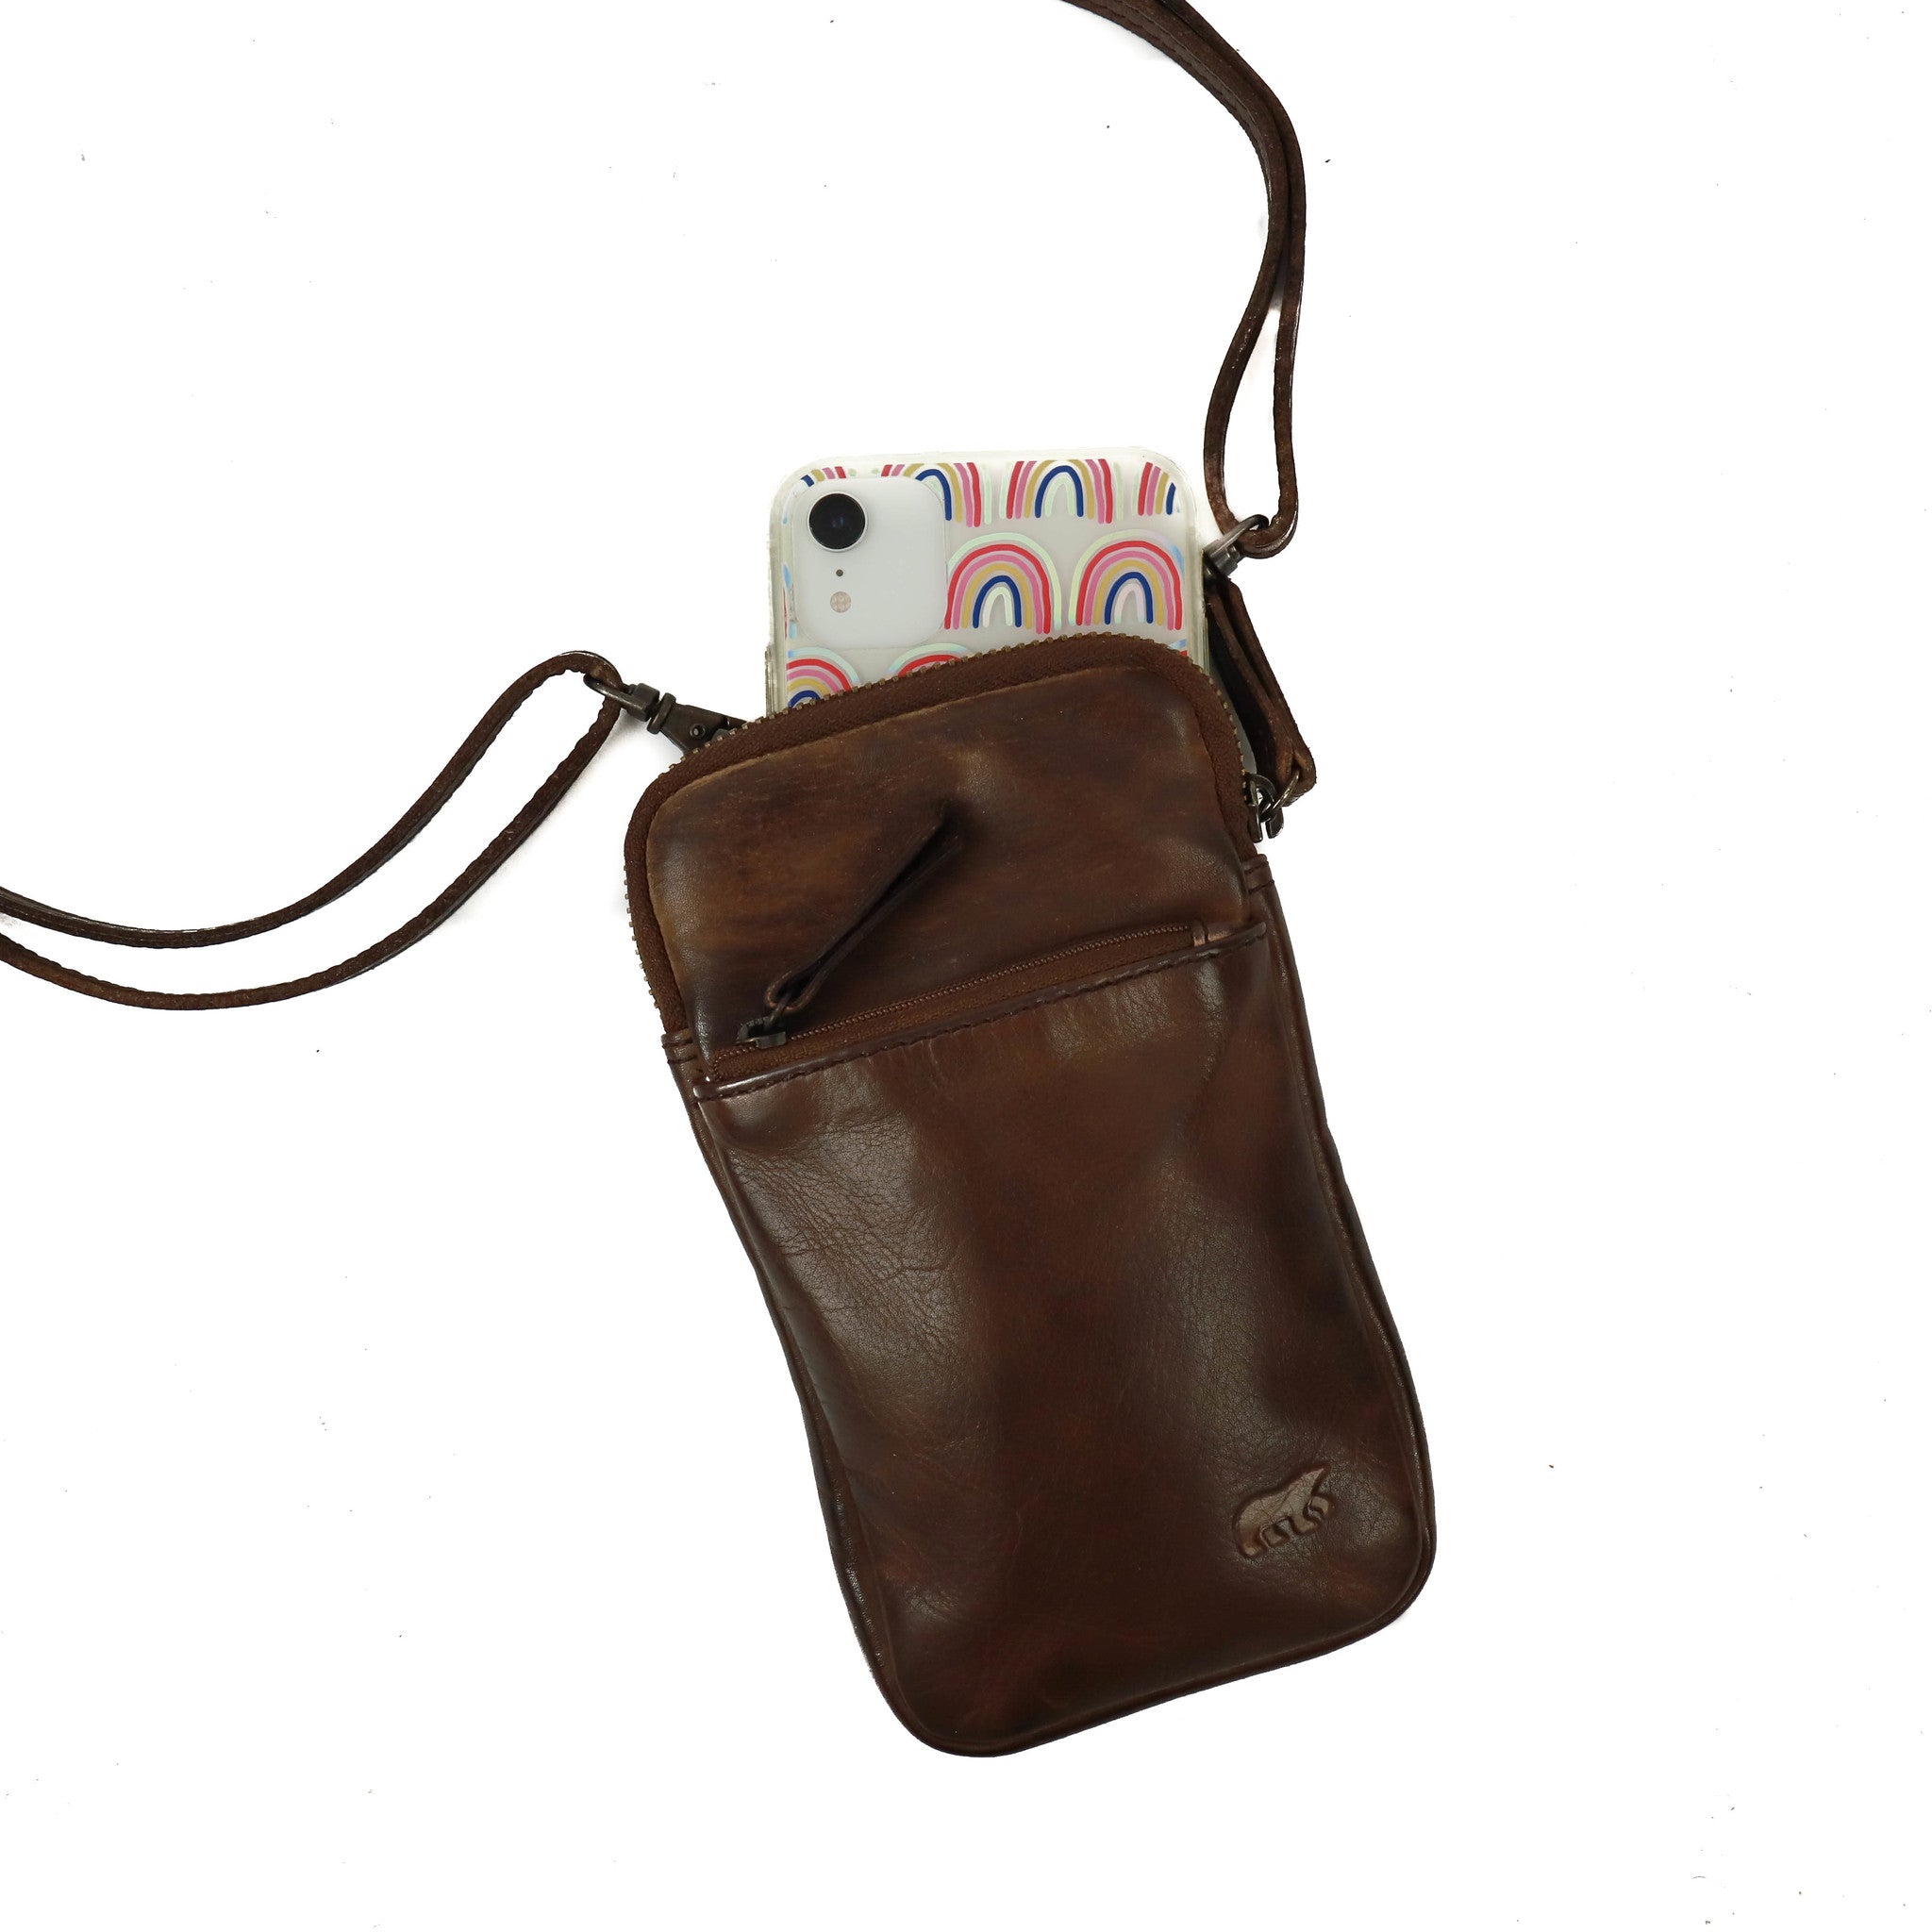 Phone bag 'Sammy' dark brown - CL 41862